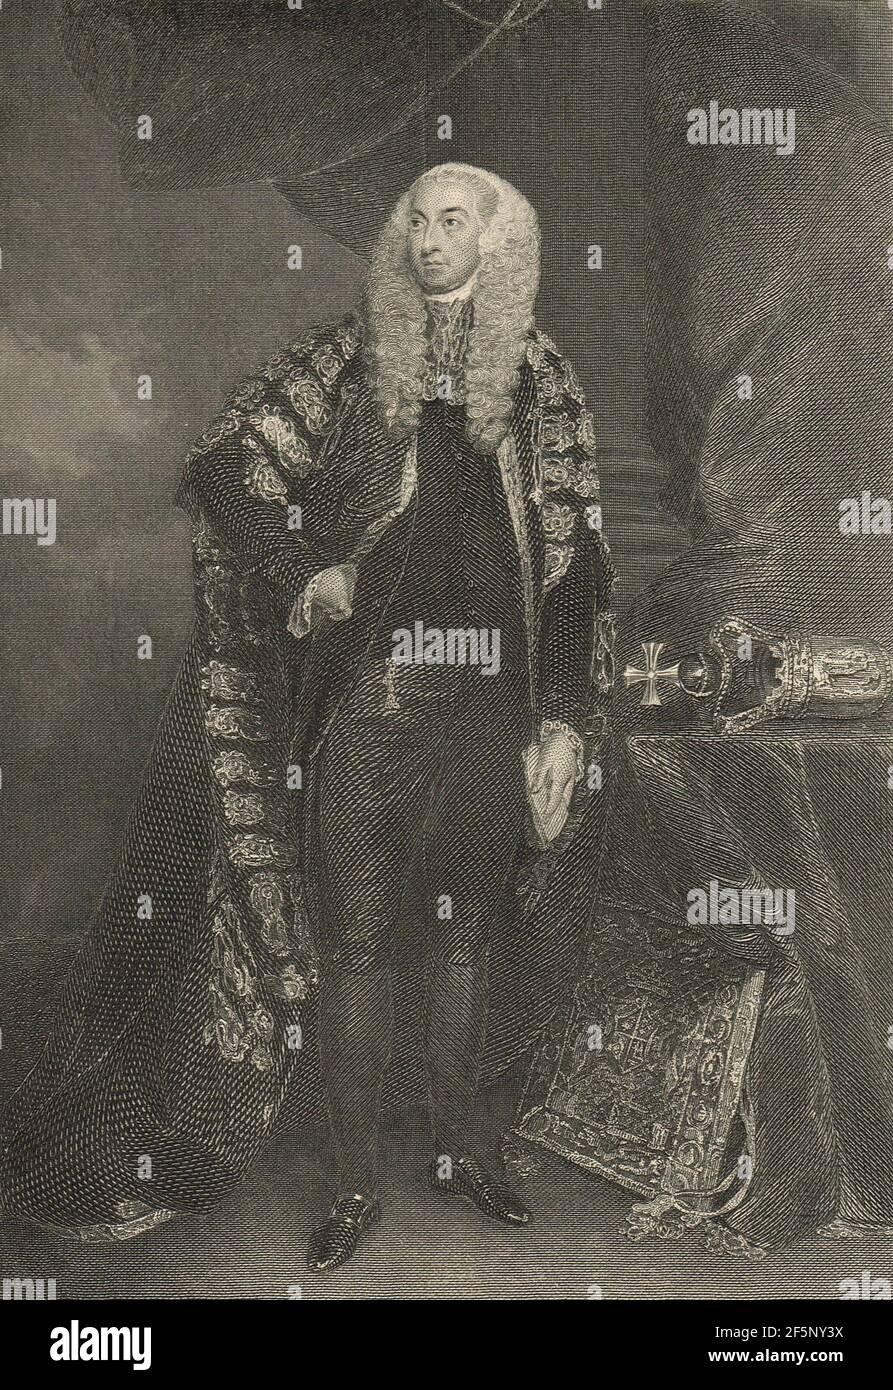 John FitzGibbon, 1st Conde de Clare, Lord Canciller de Irlanda durante la rebelión irlandesa de 1798 Foto de stock